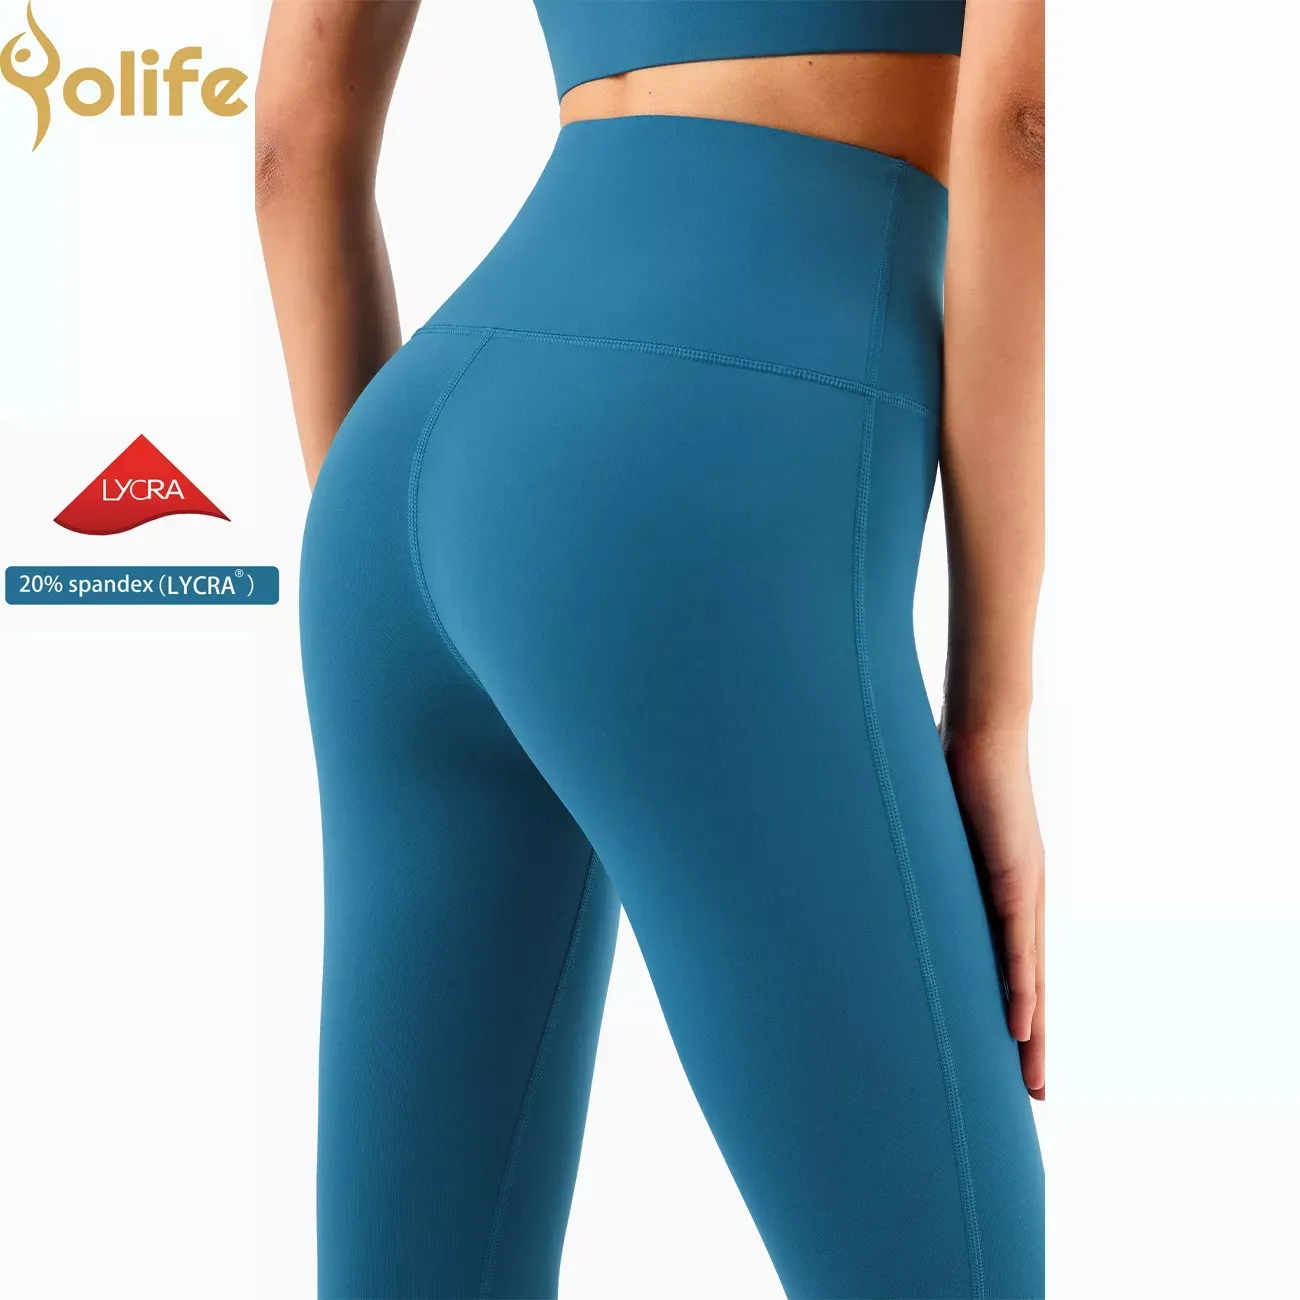 Yolife-mallas de nailon 81% lycra y elastano, pantalones de yoga con cintura alta y realce de trasero, 19%